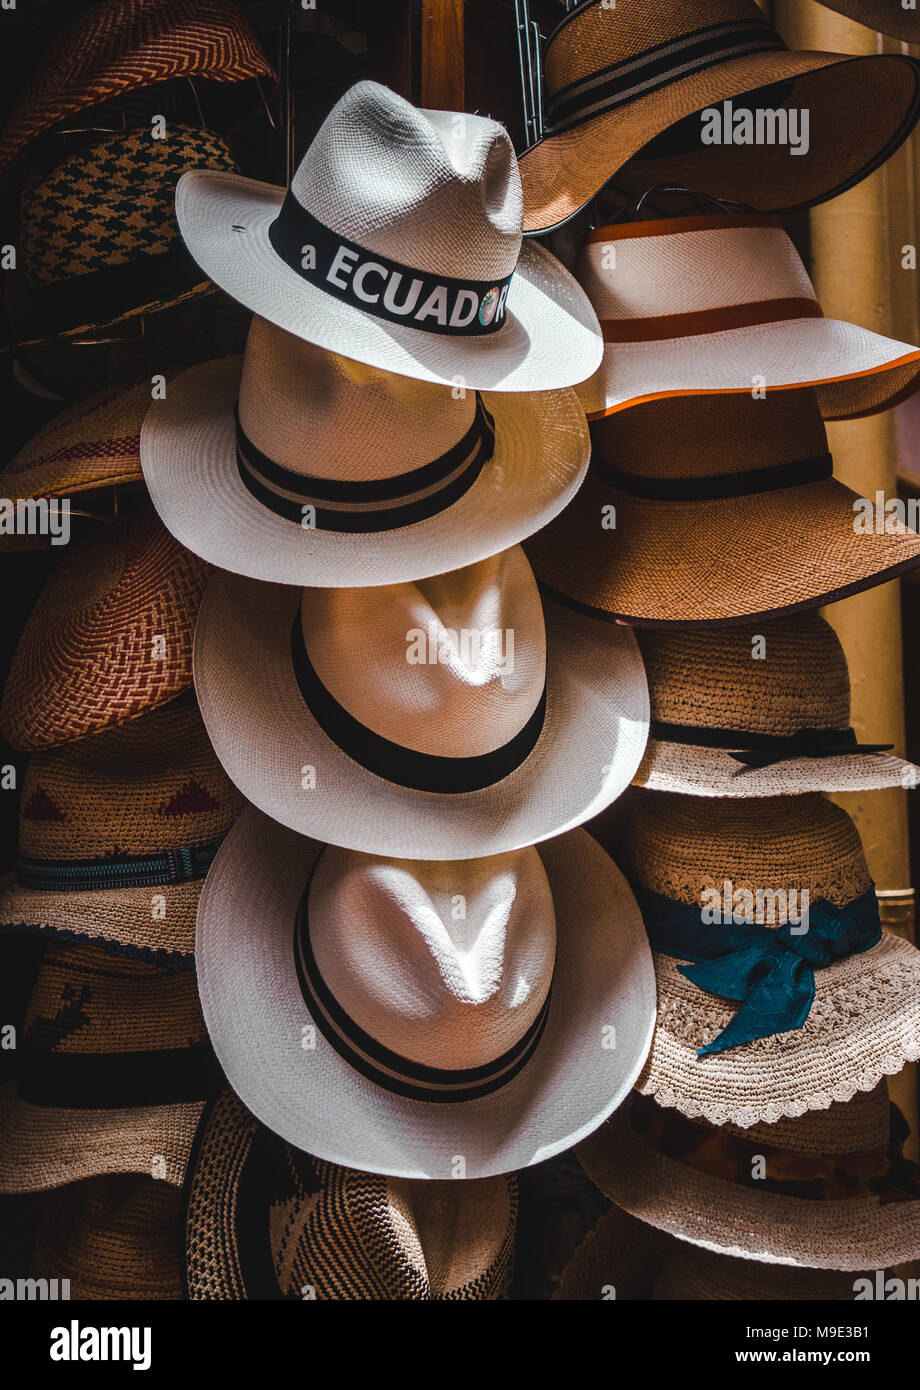 Handgefertigte ecuadorianischen Panama Hüte mit schwarzen Streifen auf dem Display in einem Geschäft in Cuenca, Ecuador Stockfoto